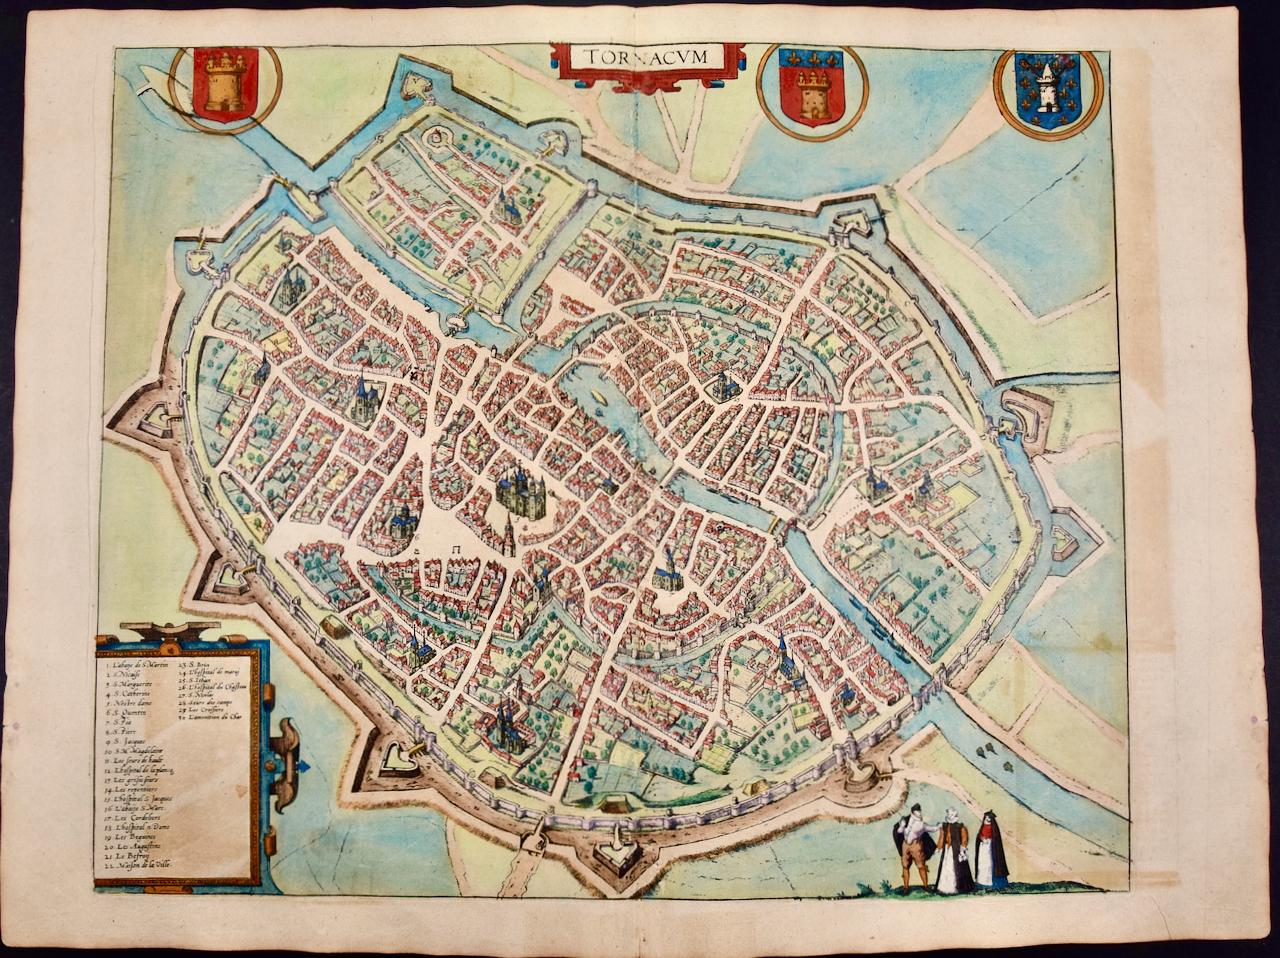 Frans Hogenberg Landscape Print – Tournai (Tournay), Belgien: Eine handkolorierte Karte aus dem 16. Jahrhundert von Braun & Hogenberg